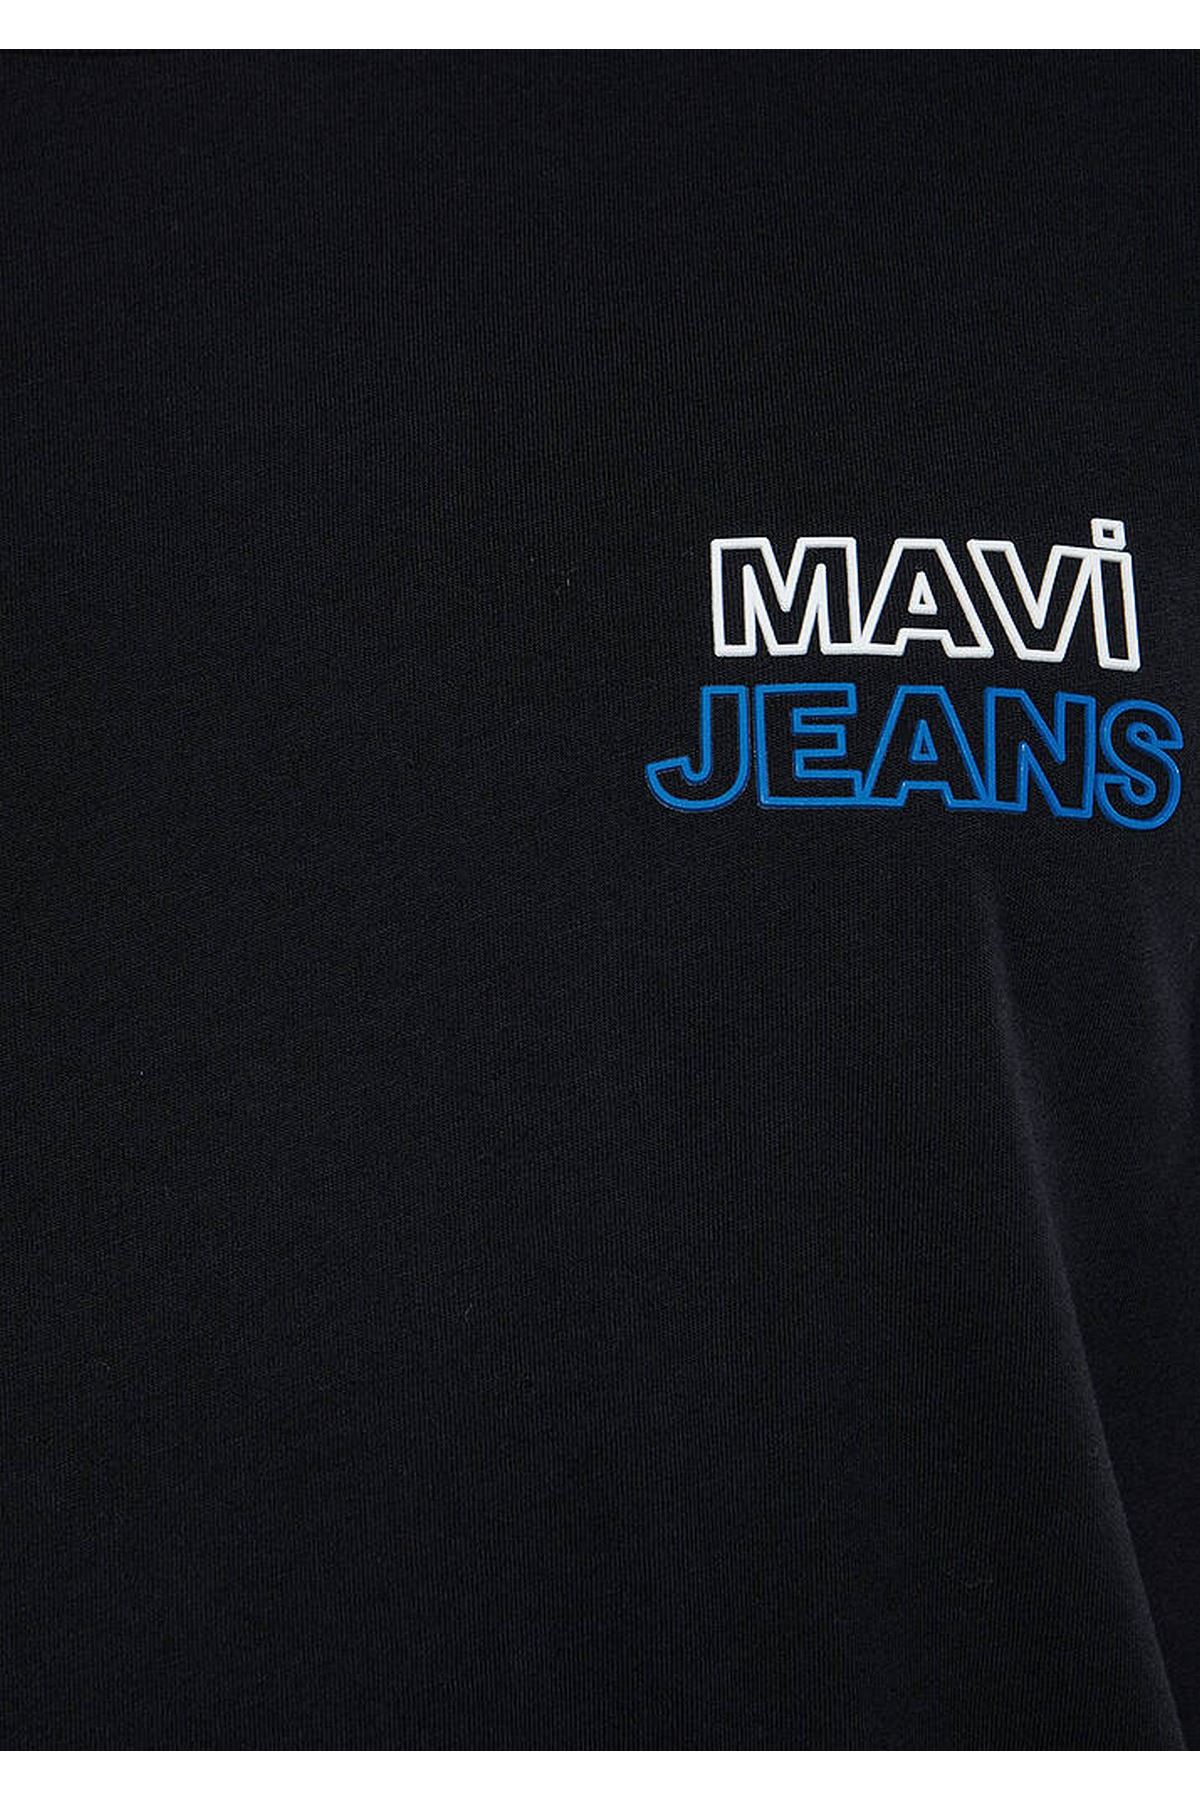 Mavi Logo Baskılı Erkek Siyah Tişört - M066841-900